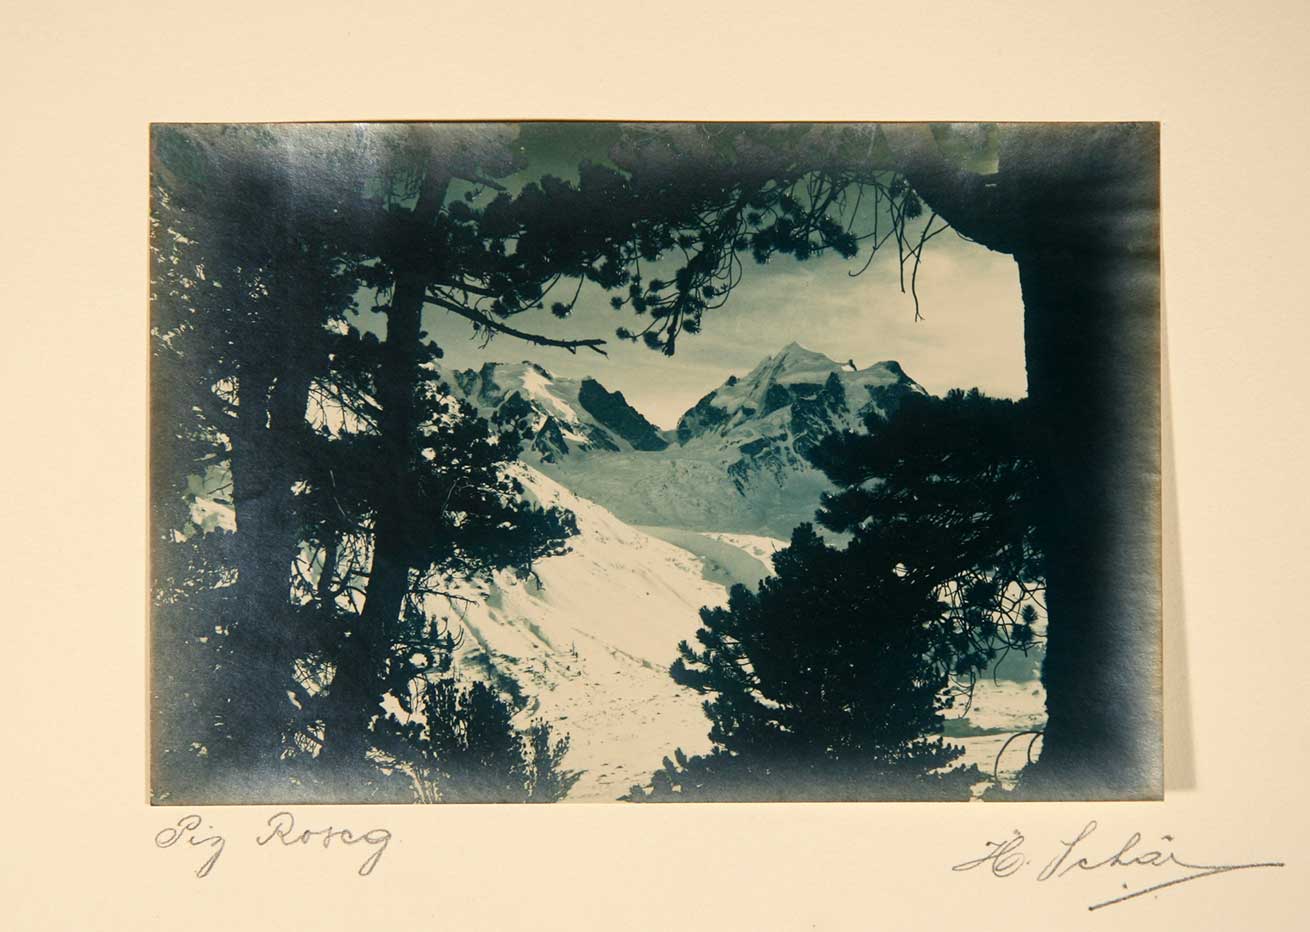 SCHR, H. (Fotograf Hans Schr-Zogg, (1898-1984): - Graubnden. Mappe mit 6 Orig.-Aufnahmen. Auf Unterlagen montiert.